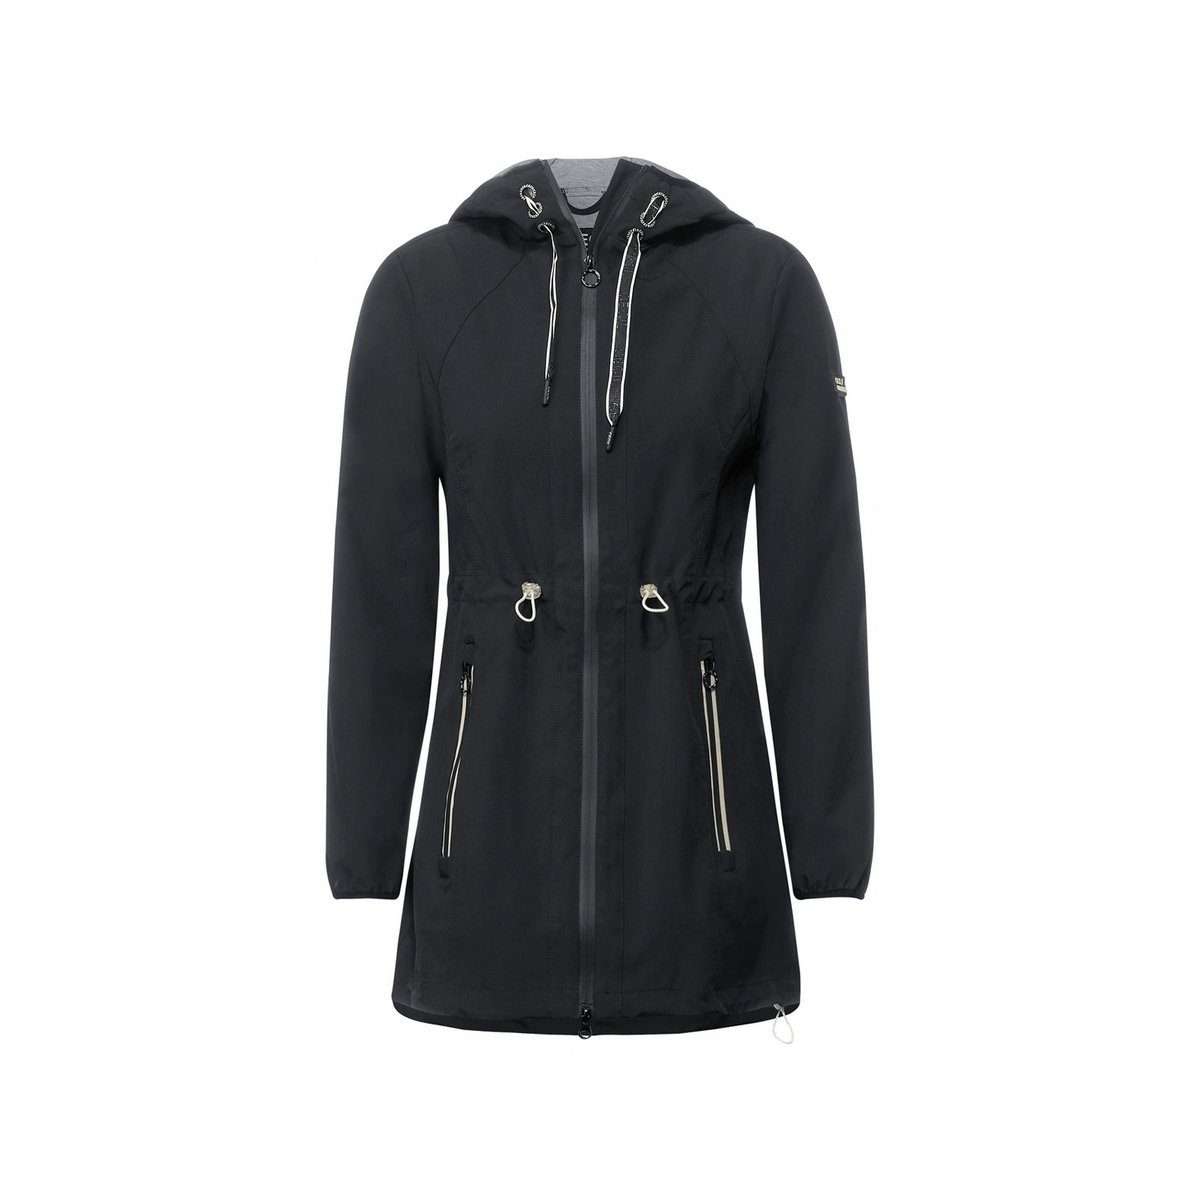 Короткое пальто из софтшелла черного цвета (1 предмет) на кулиске